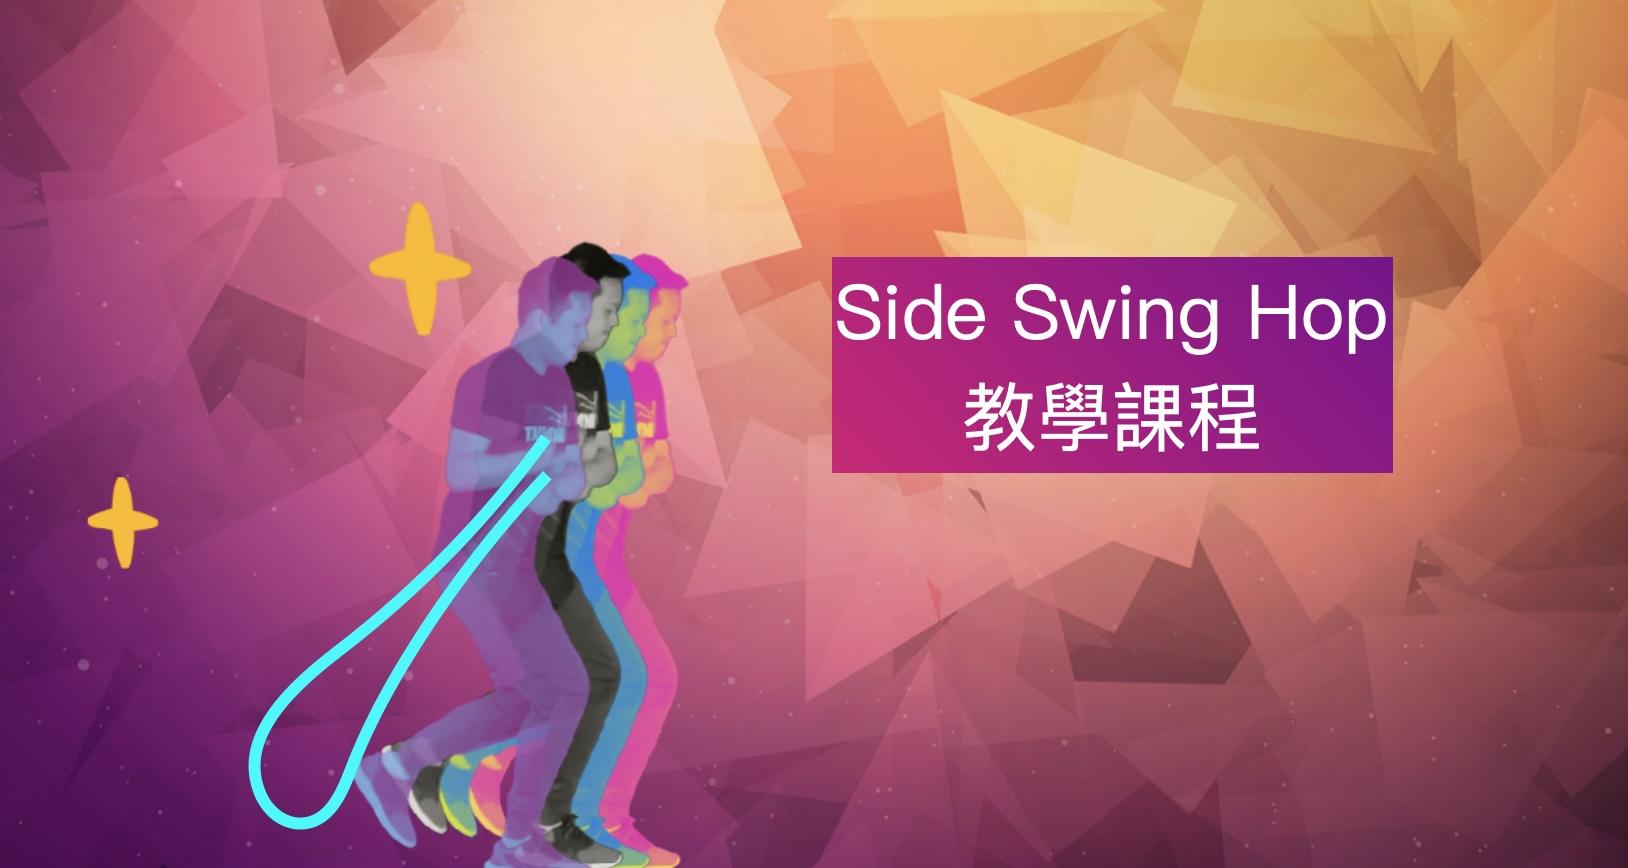 Side Swing Hop教學